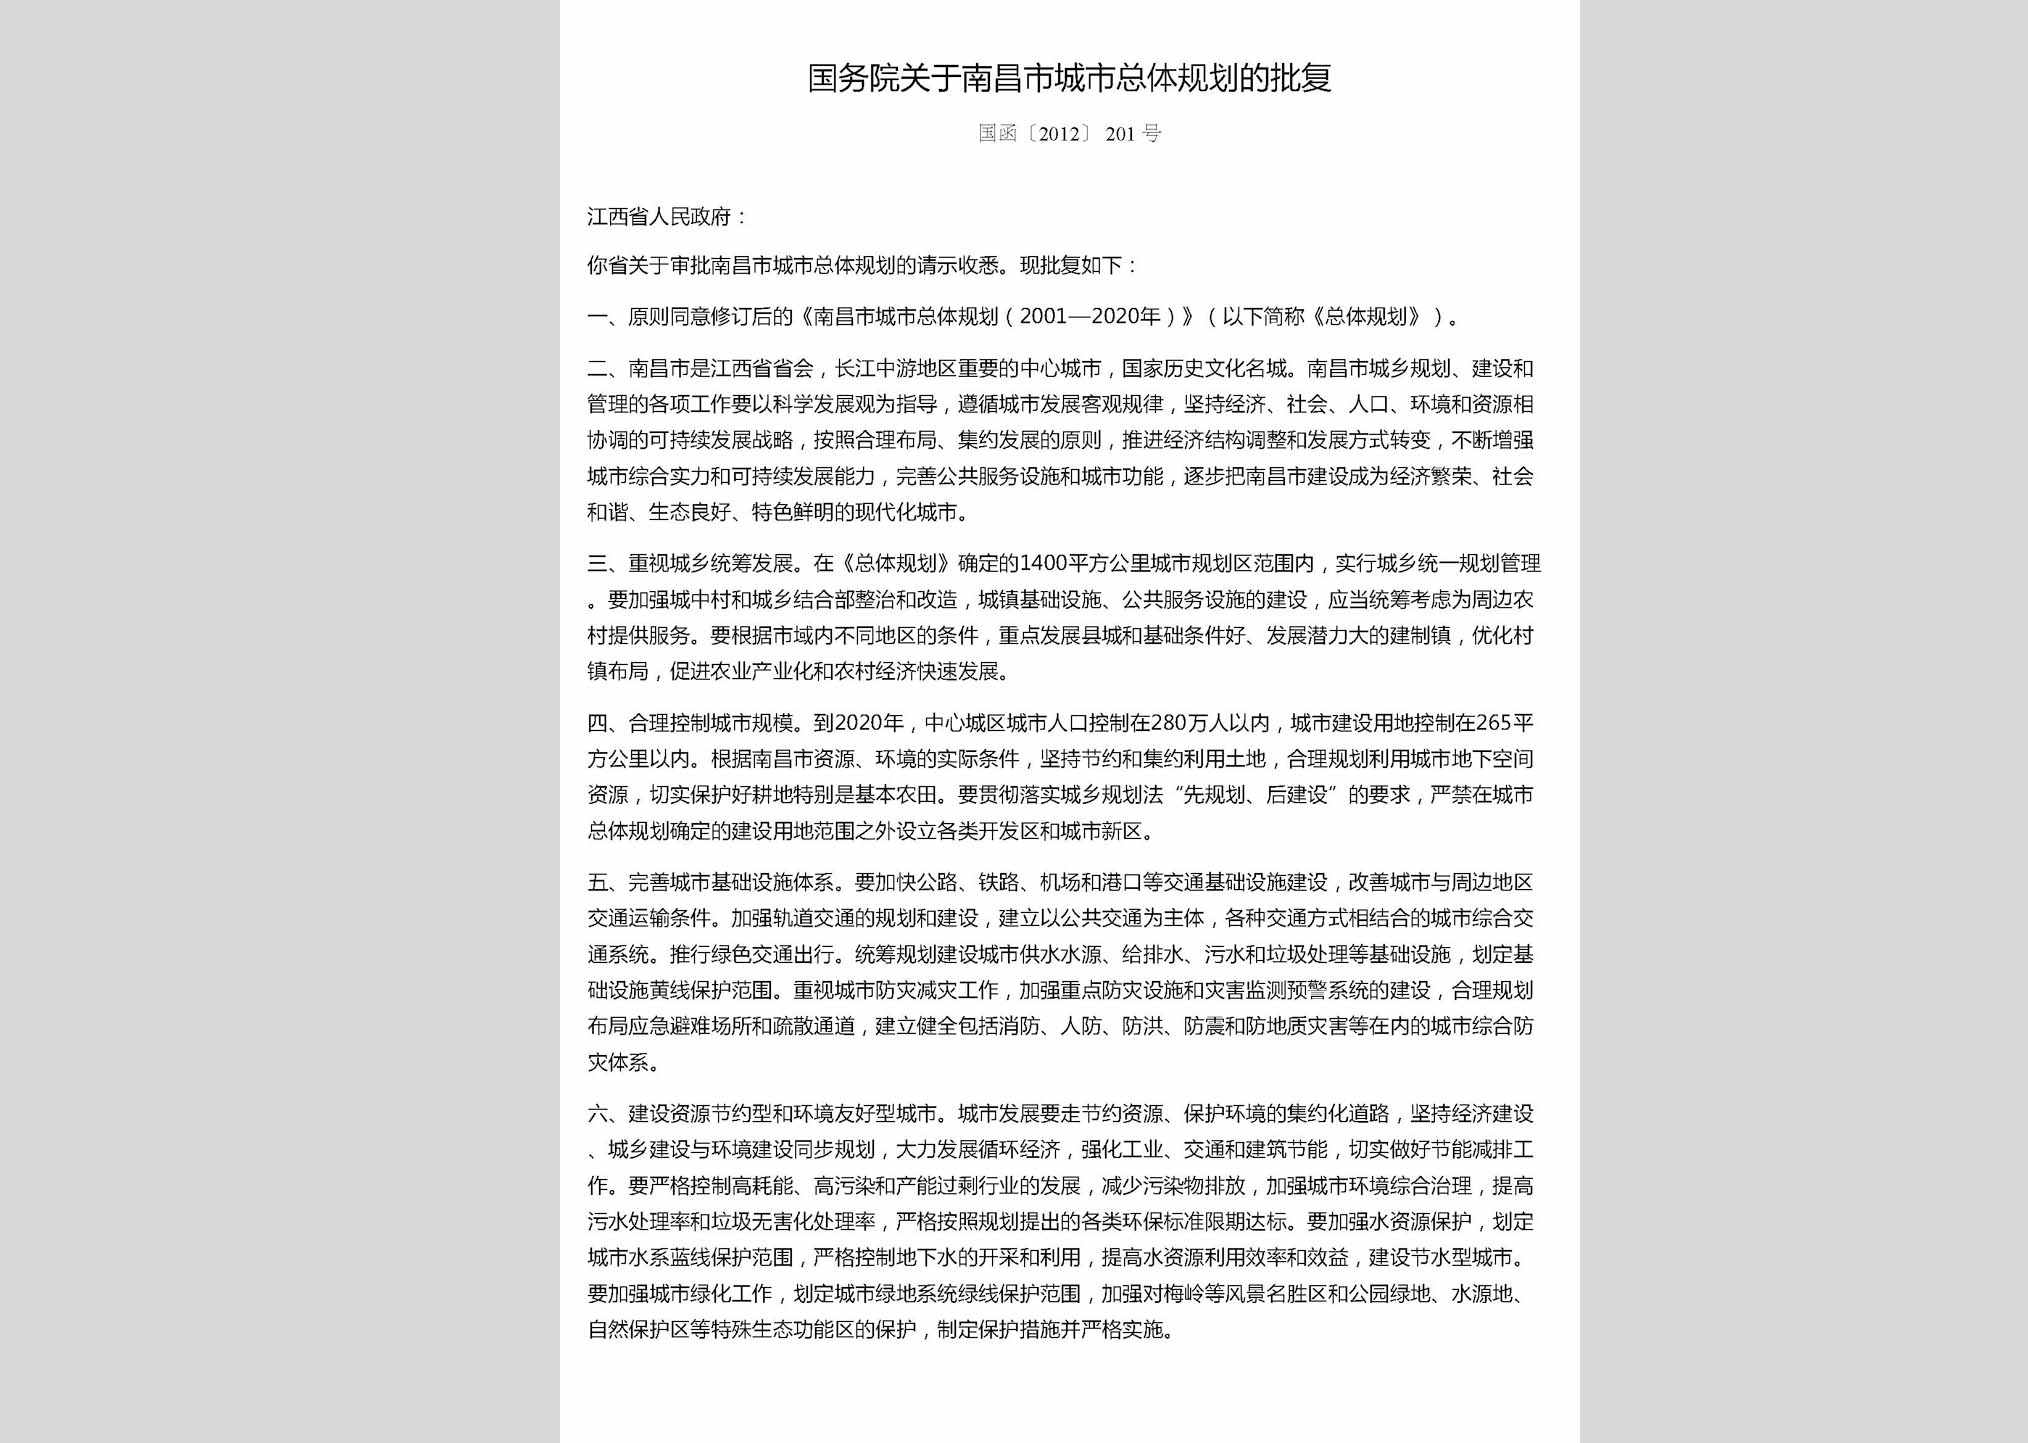 国函[2012]201号：国务院关于南昌市城市总体规划的批复